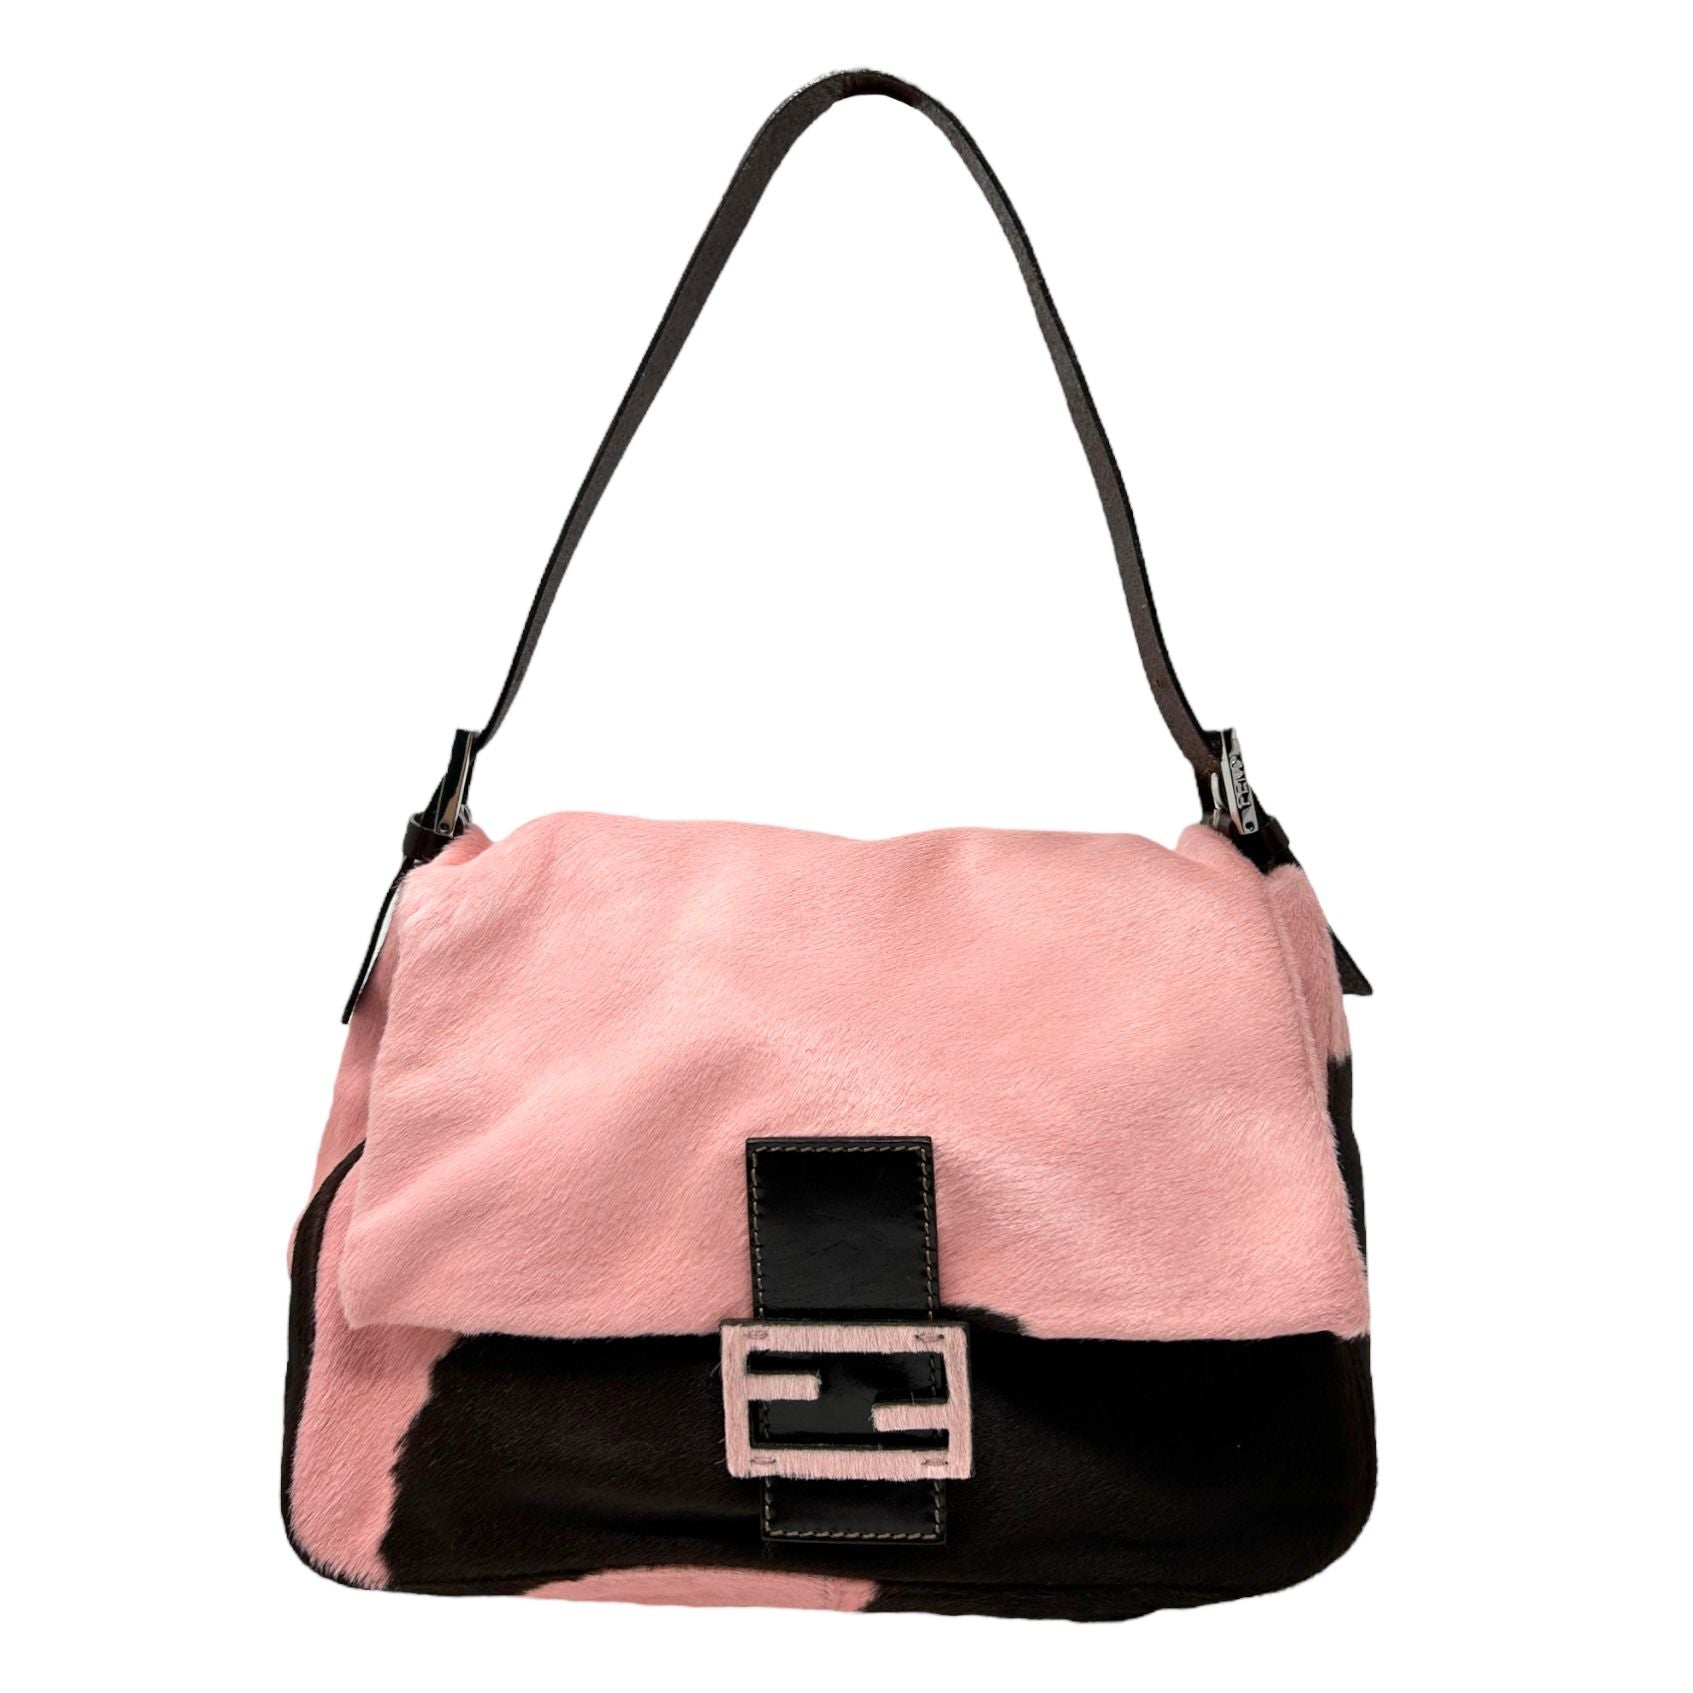 Fendi Baguette Shoulder Bag